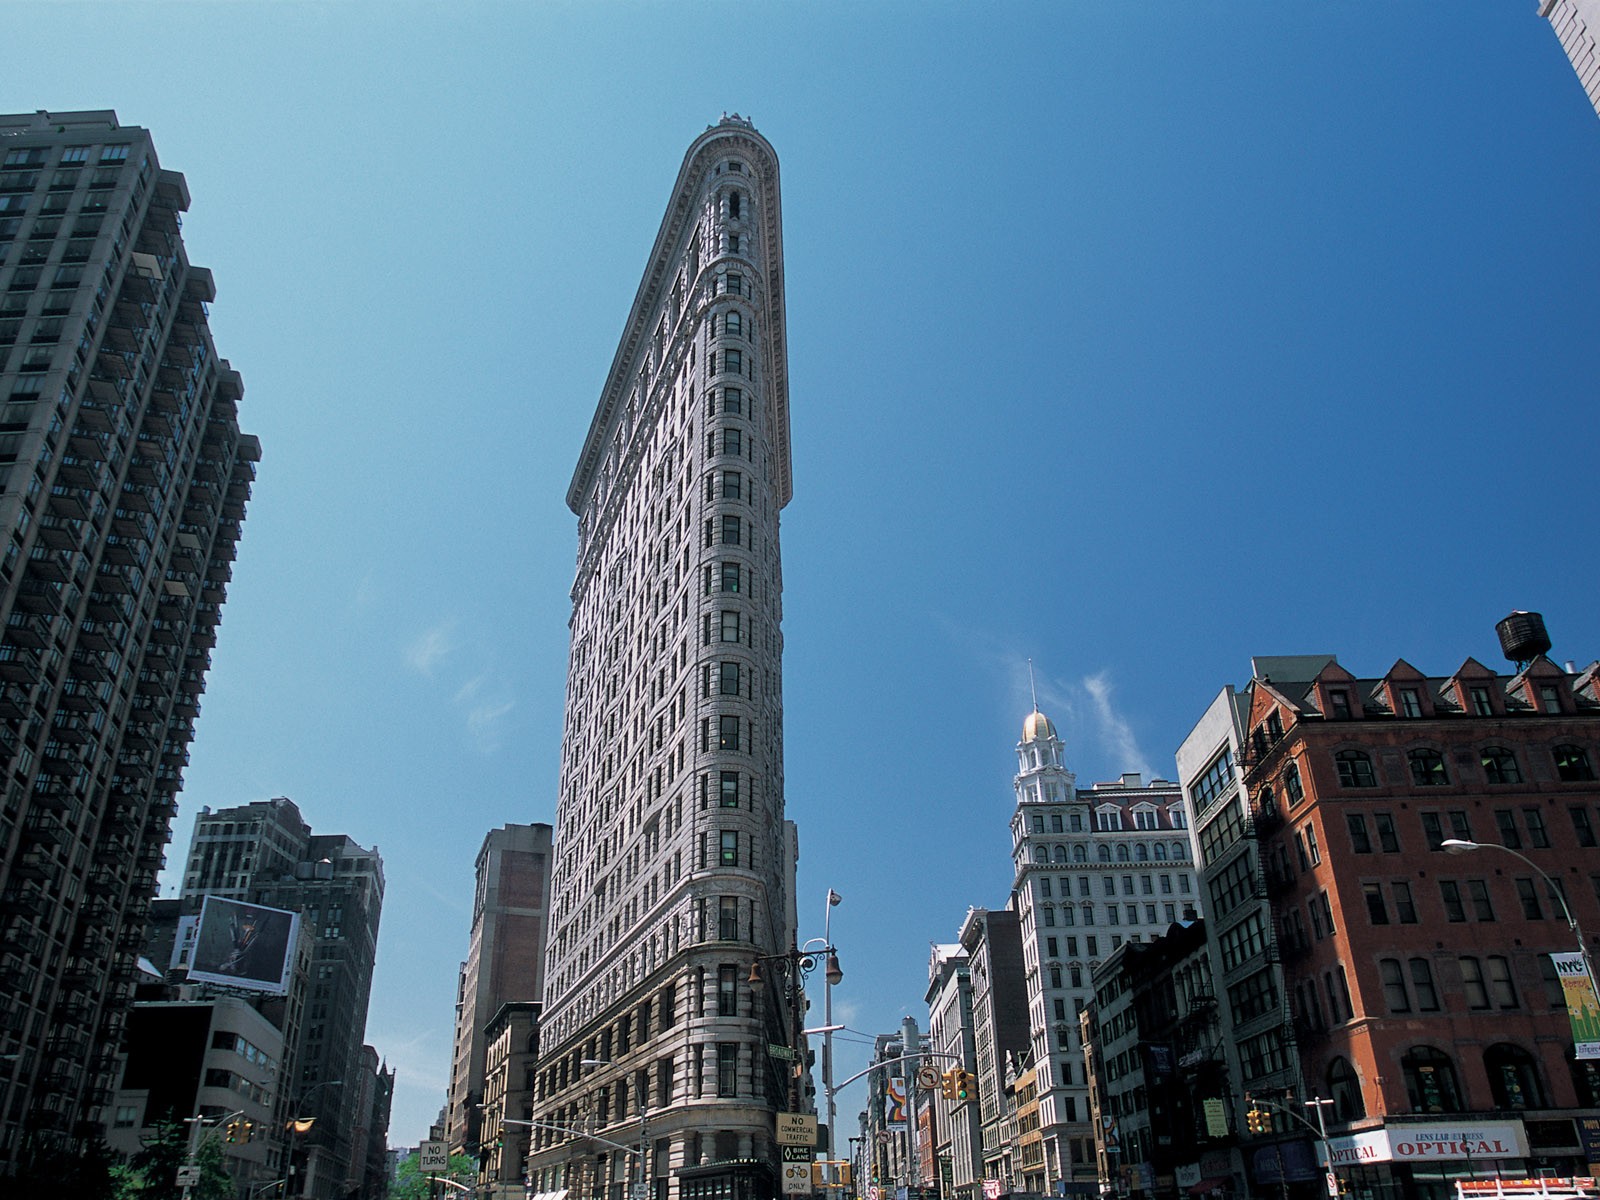 Animé de la ville de New York Building #8 - 1600x1200